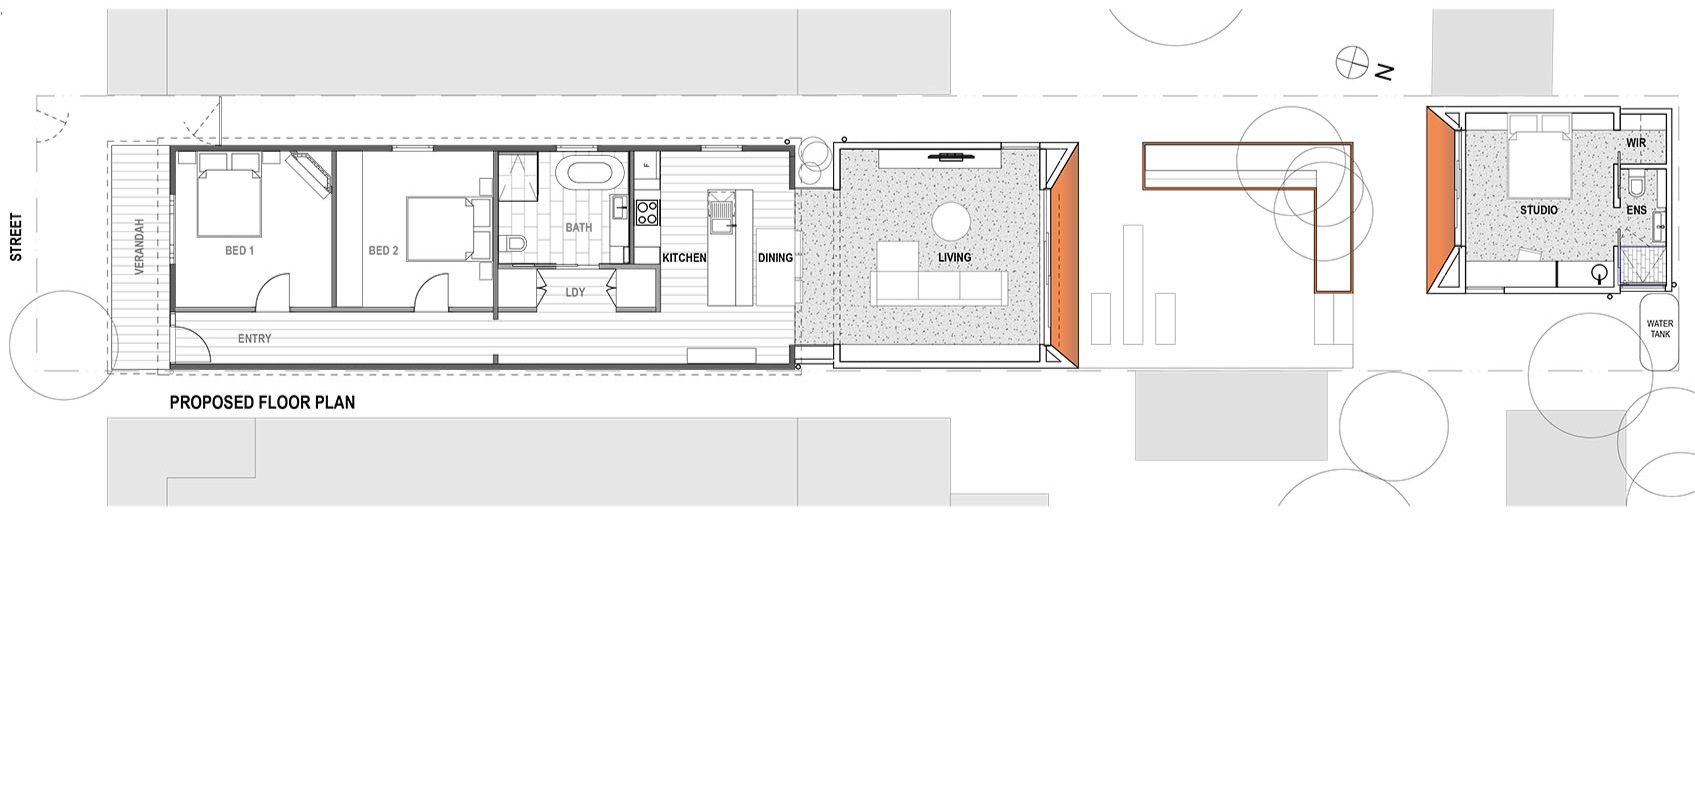 2 Rooms Prop Plan.jpg